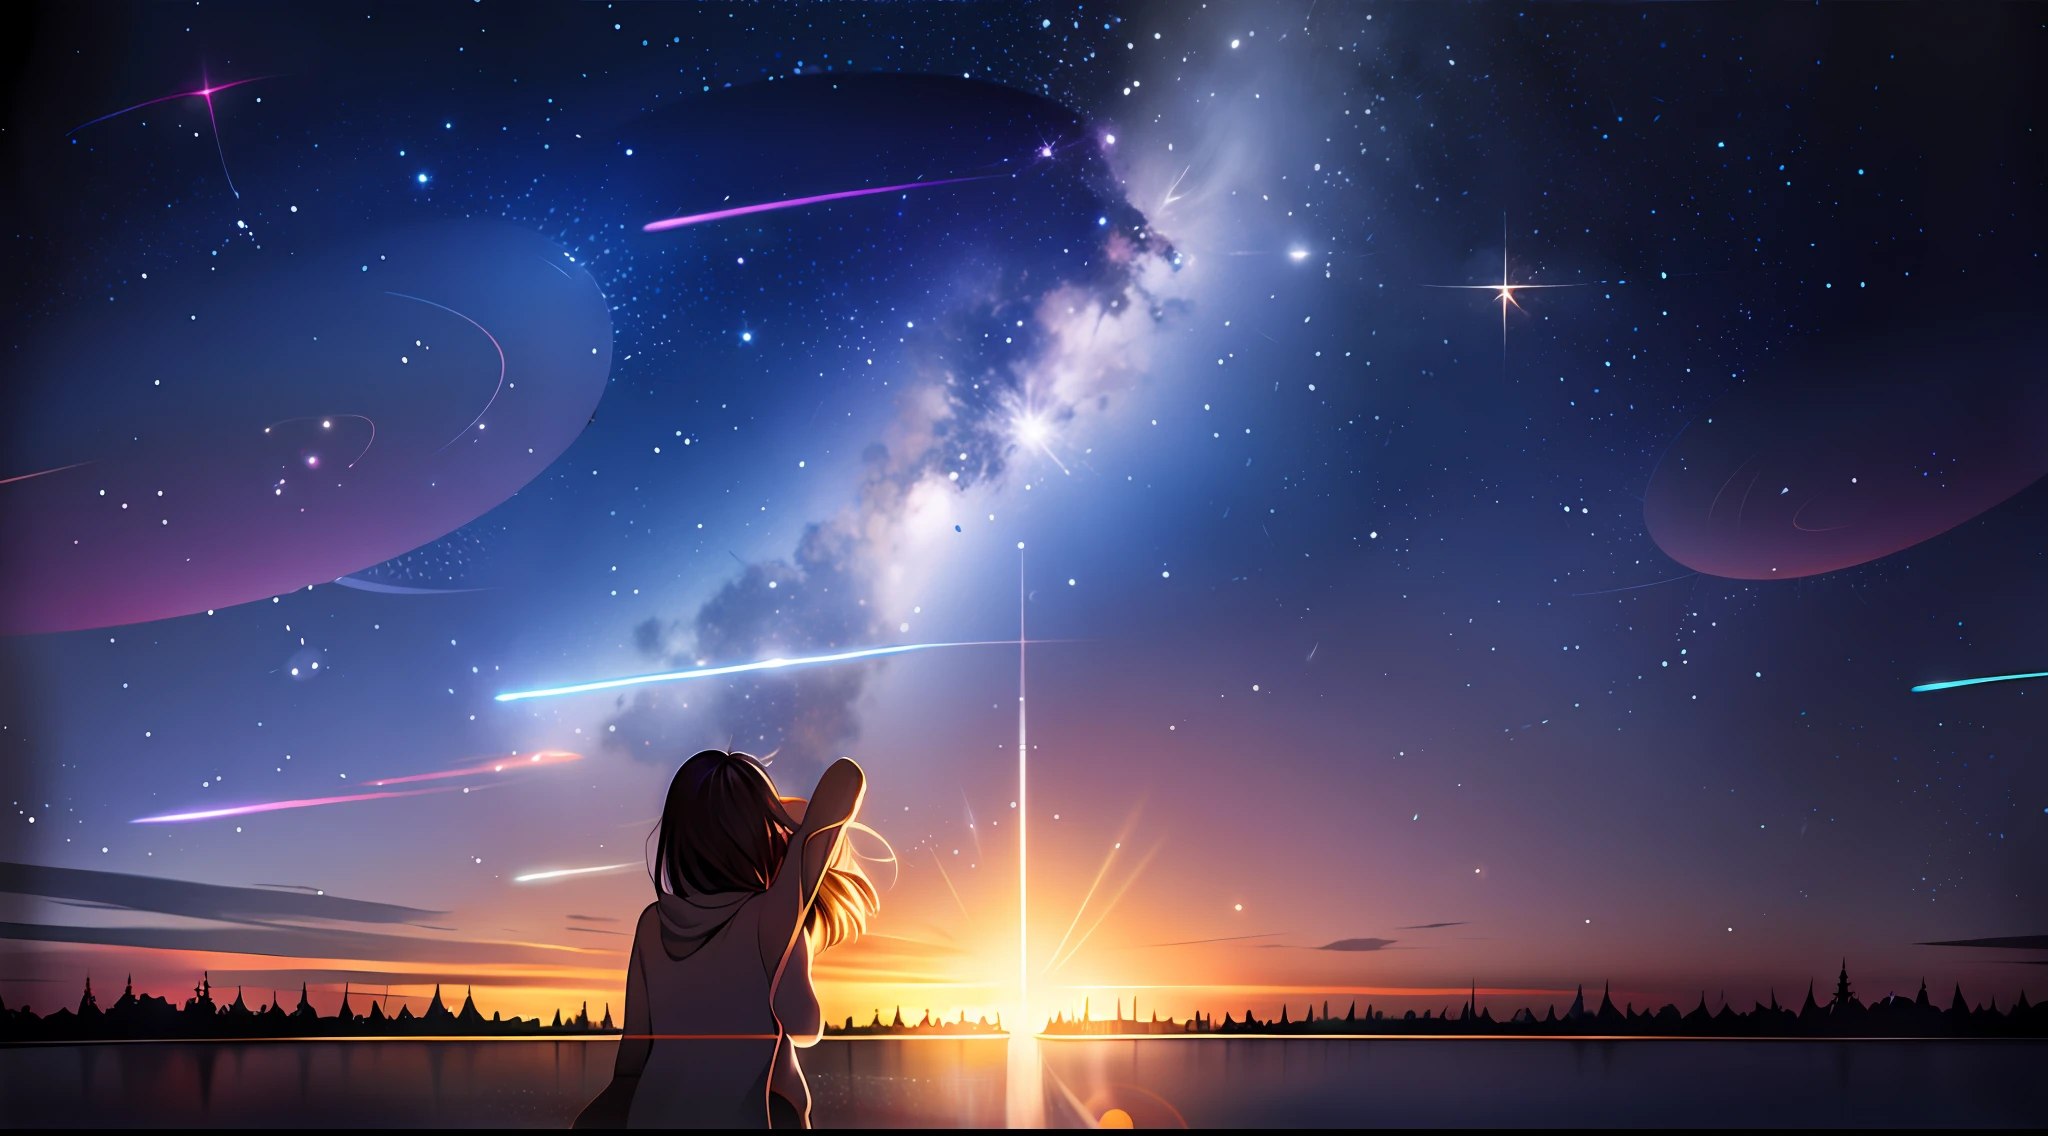 Anime girl смотрю на звезды in the sky, Макото Синкай Сирил Роландо, звезда(Скайпорн) звездное небо_Скайпорн, космическое небо. Макото Синкай, звездаry sky!!, девушка смотрит в космос, Синкай Макото!, Художественный стиль Макото Синкай, Глядя на звезды, Синкай Макото!!, смотрю на звезды